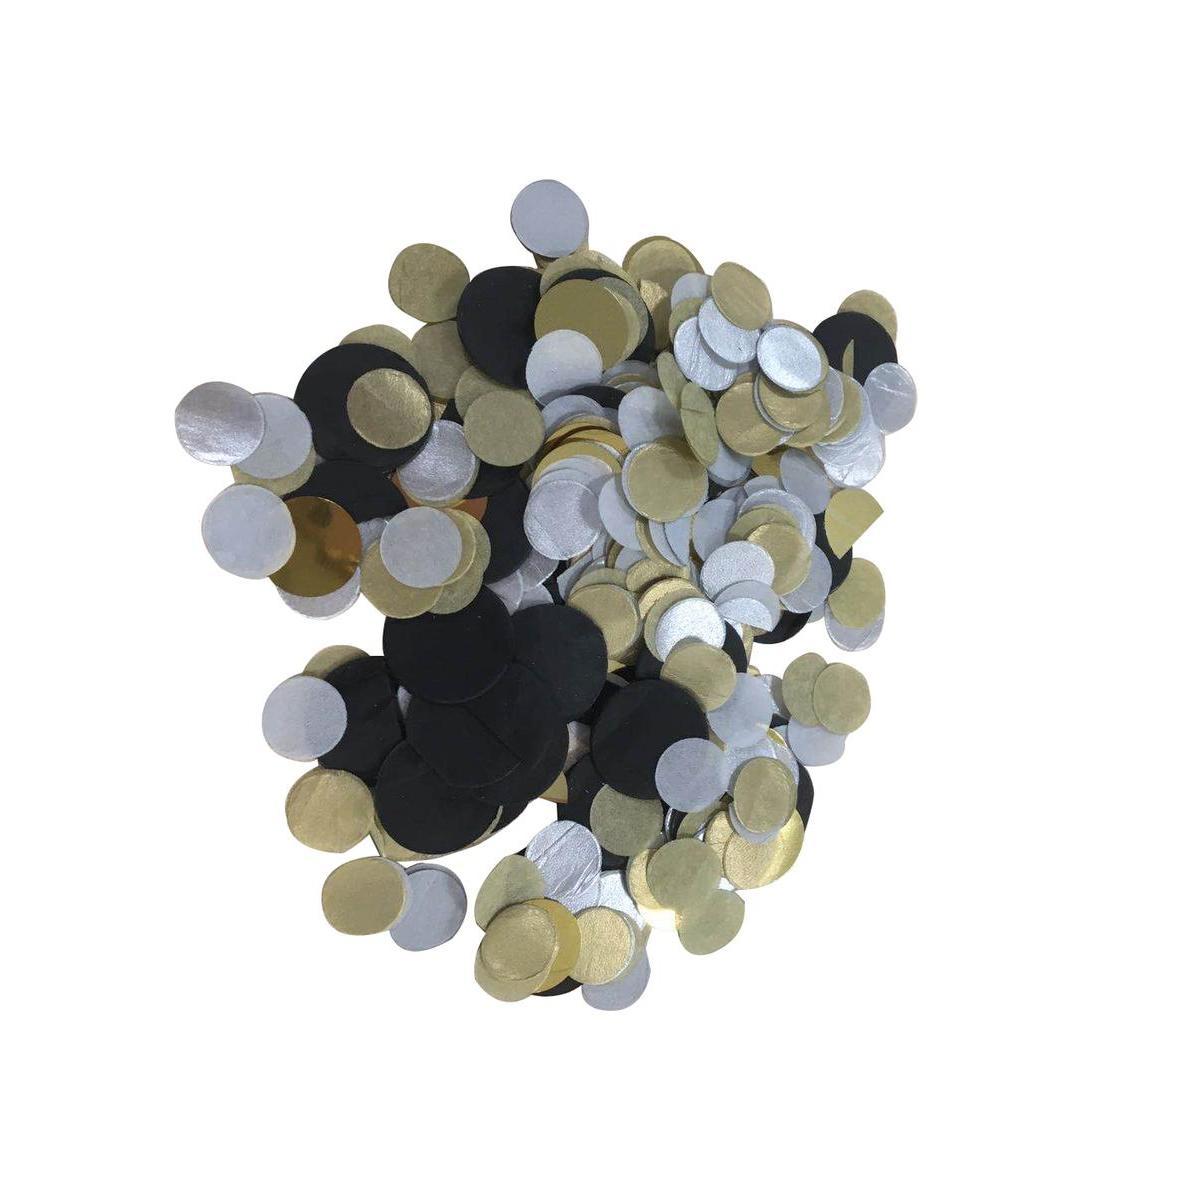 Confetti de table chic - 17 g - Or, argent, noir